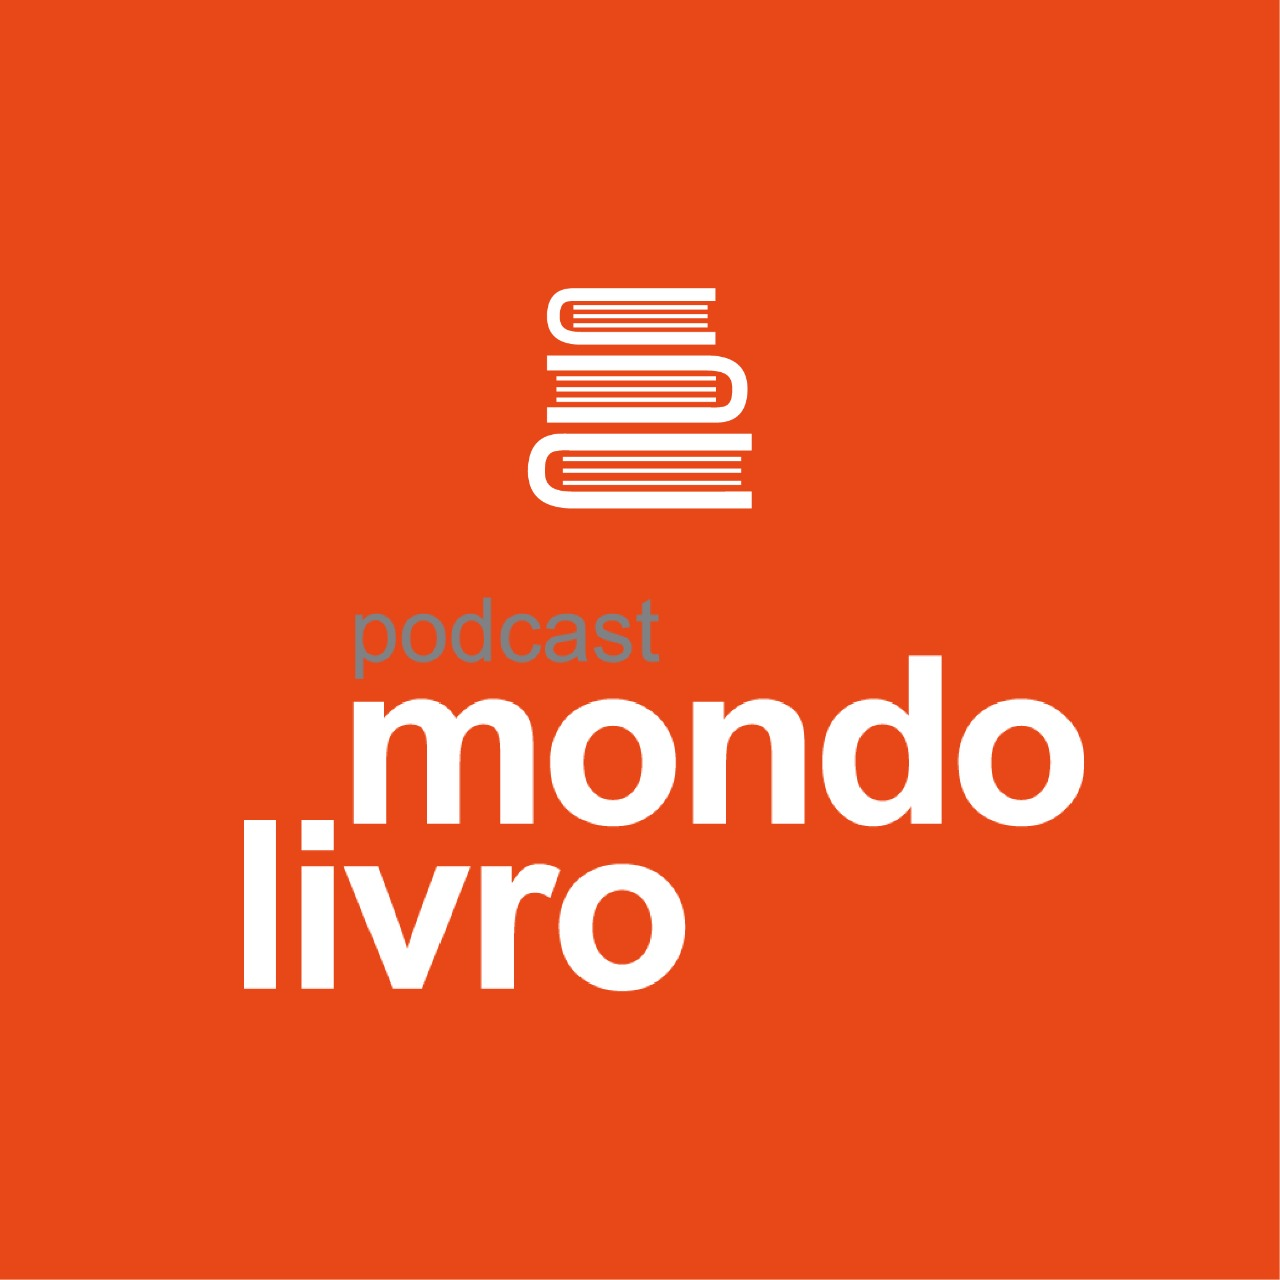 Mondolivro Podcast - “Tempo de delicadeza”, por Affonso Romano de Sant’Anna